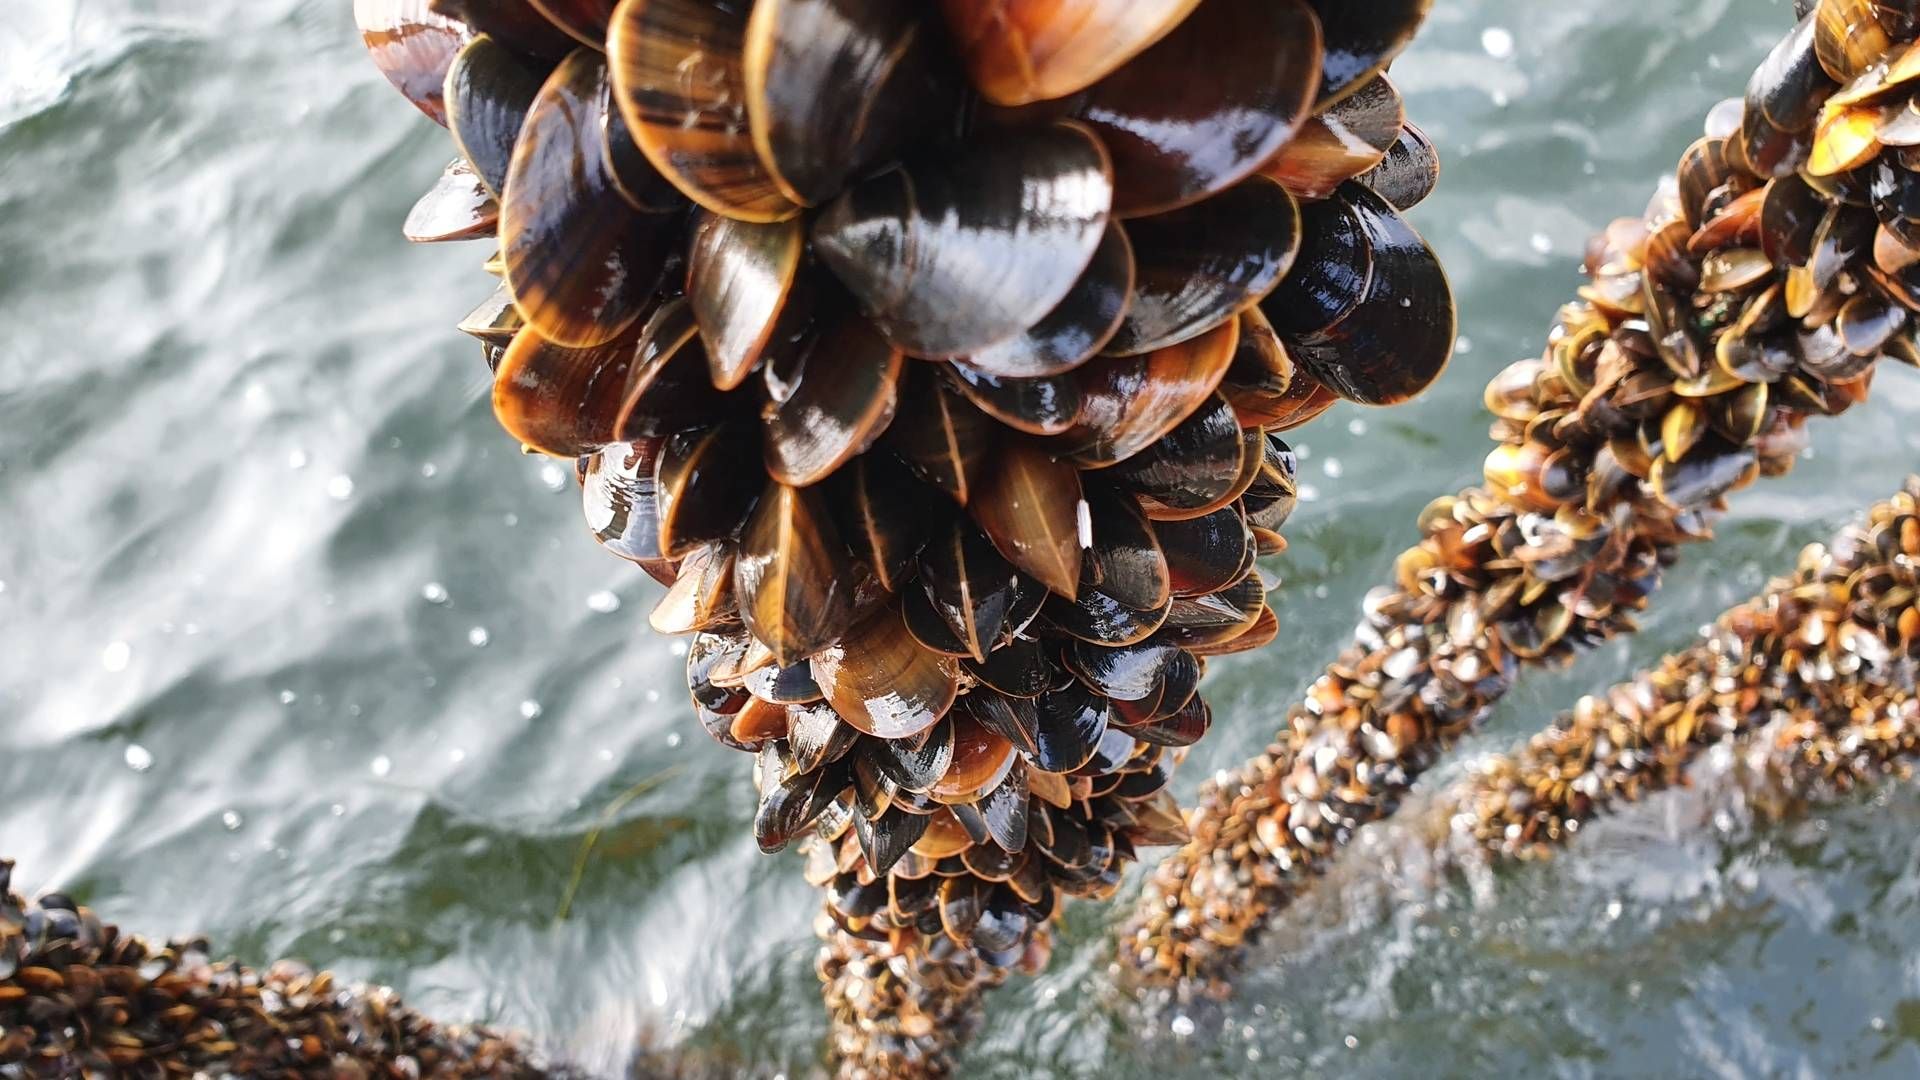 Nogle af de bedste muslinger findes i det danske havvand, mener Mark Lykke fra Muslingeriet. Derfor skal vi danskere også til at begynde at påskønne - og ikke mindst spise dem. | Foto: PR / Muslingeriet